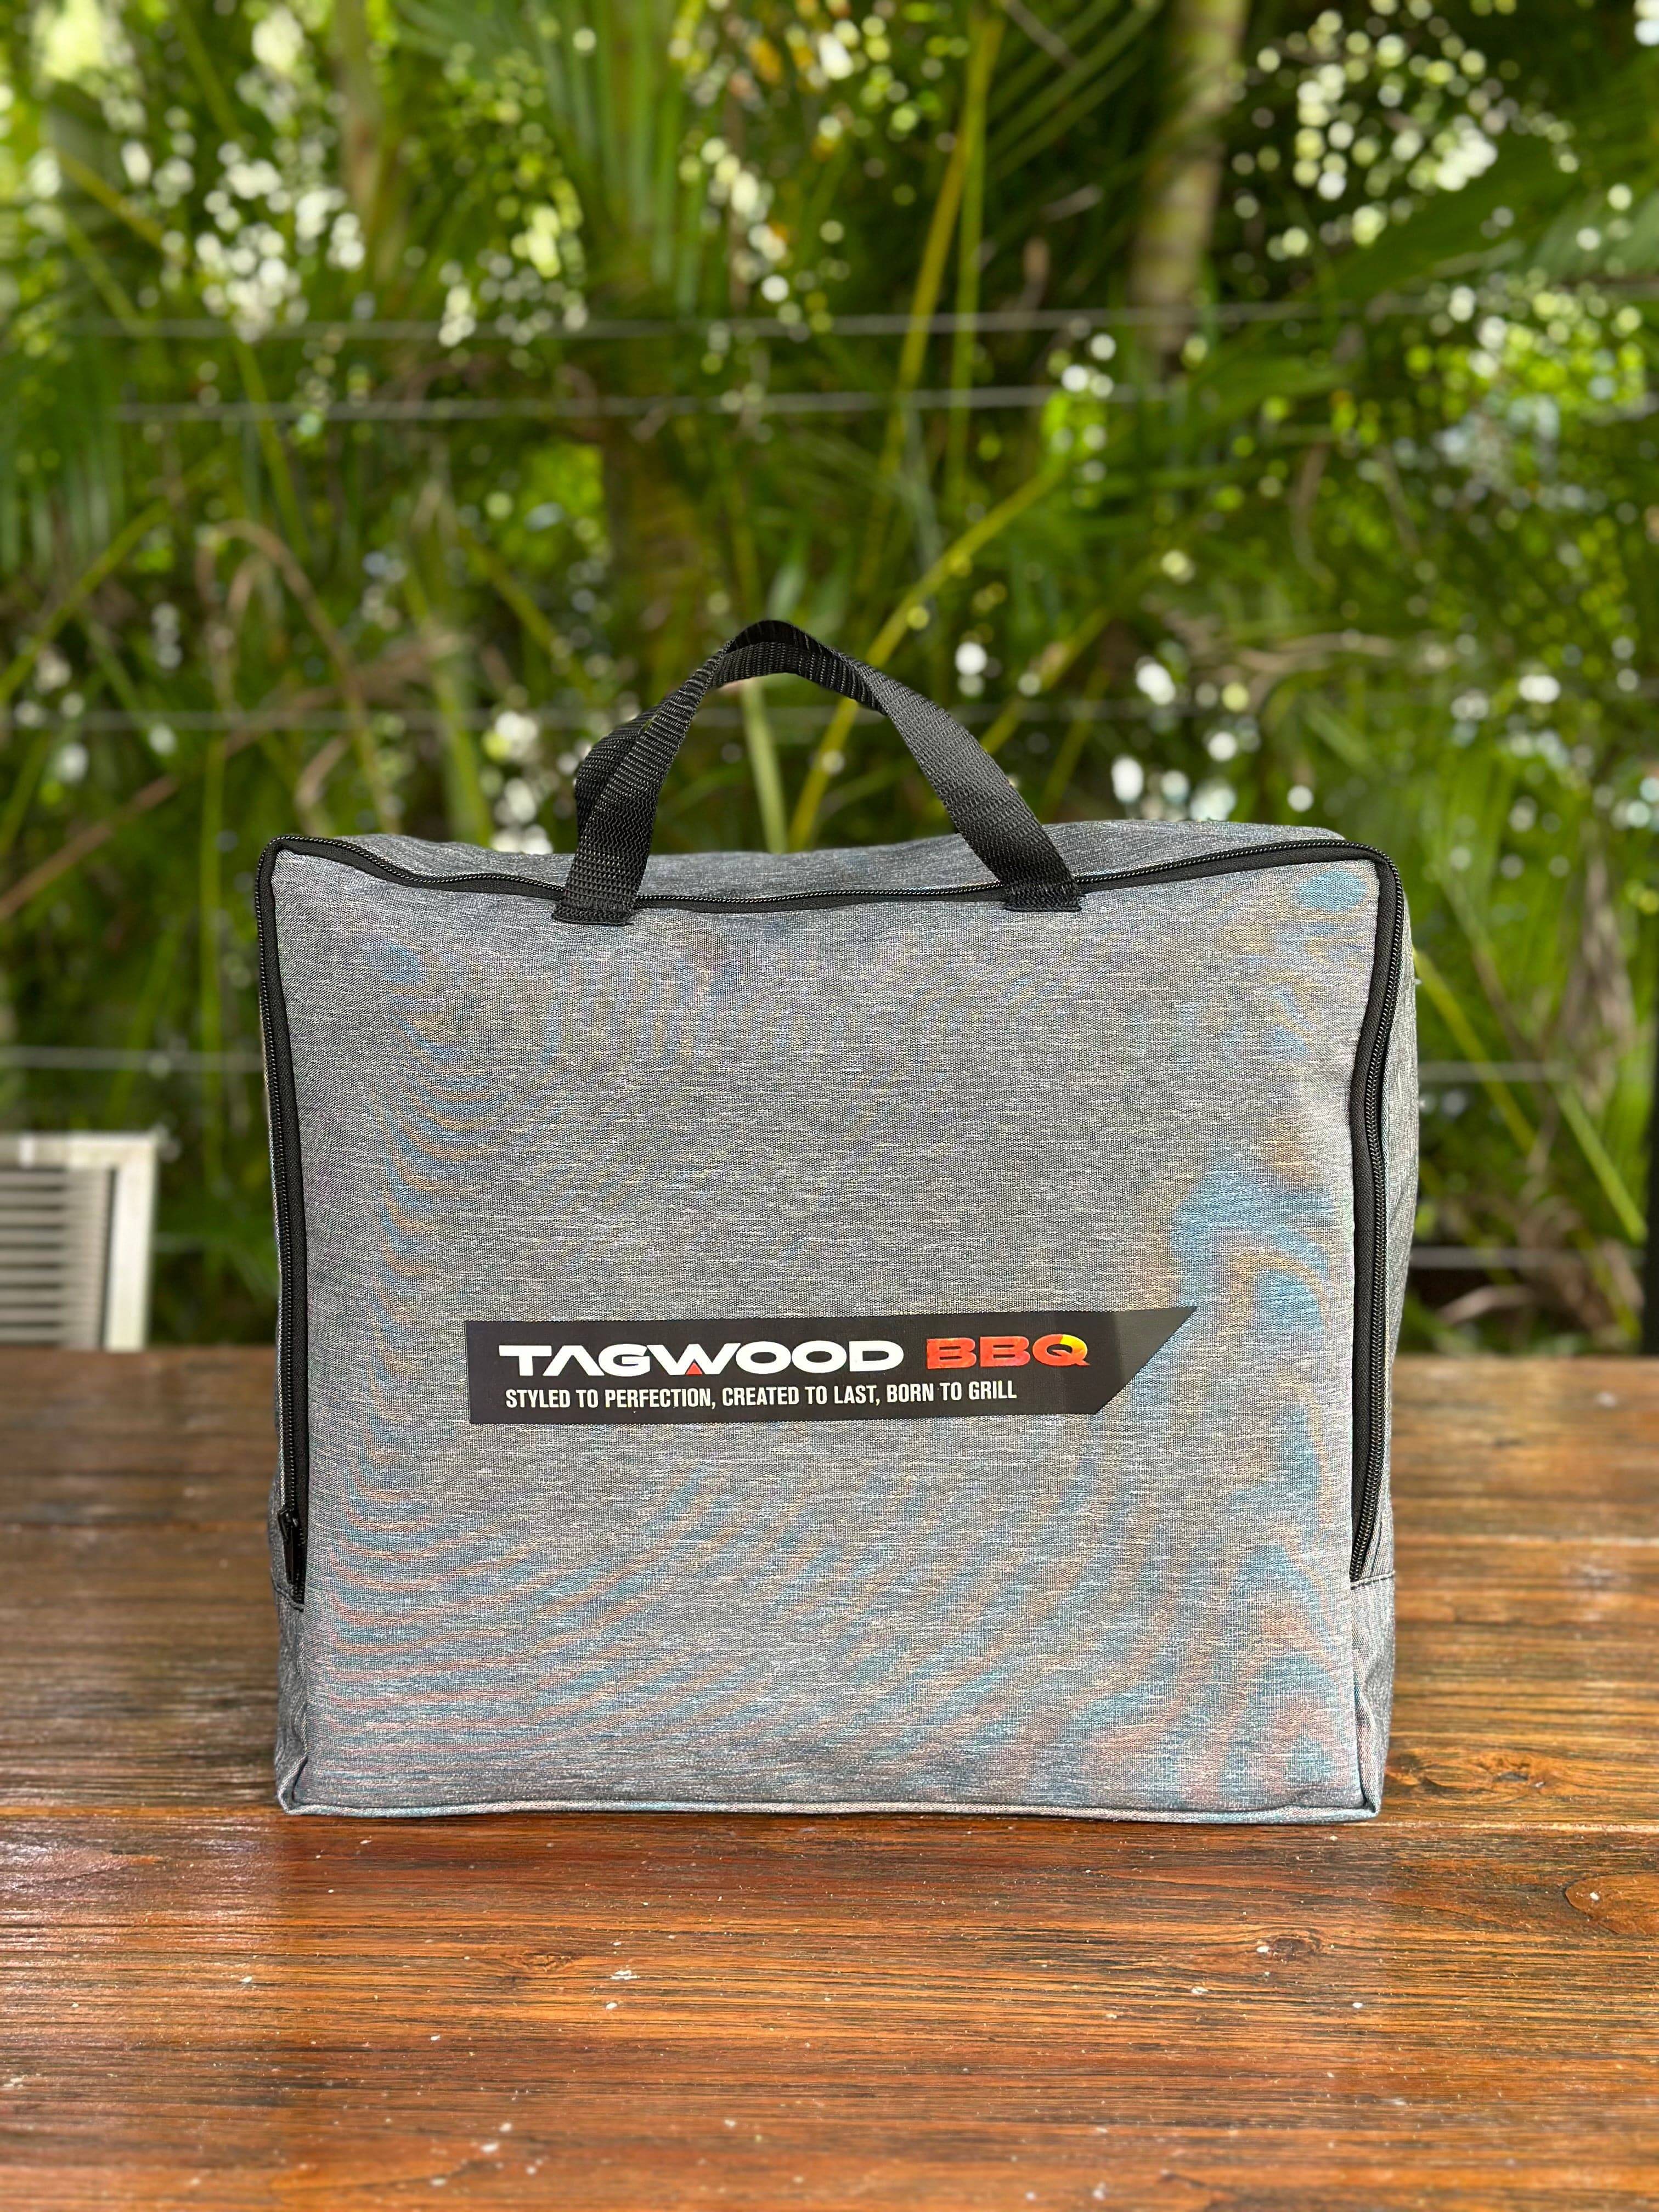 Tagwood BBQ BBQ05SS Cover | COVE05 - - TAGWOOD BBQ STORES